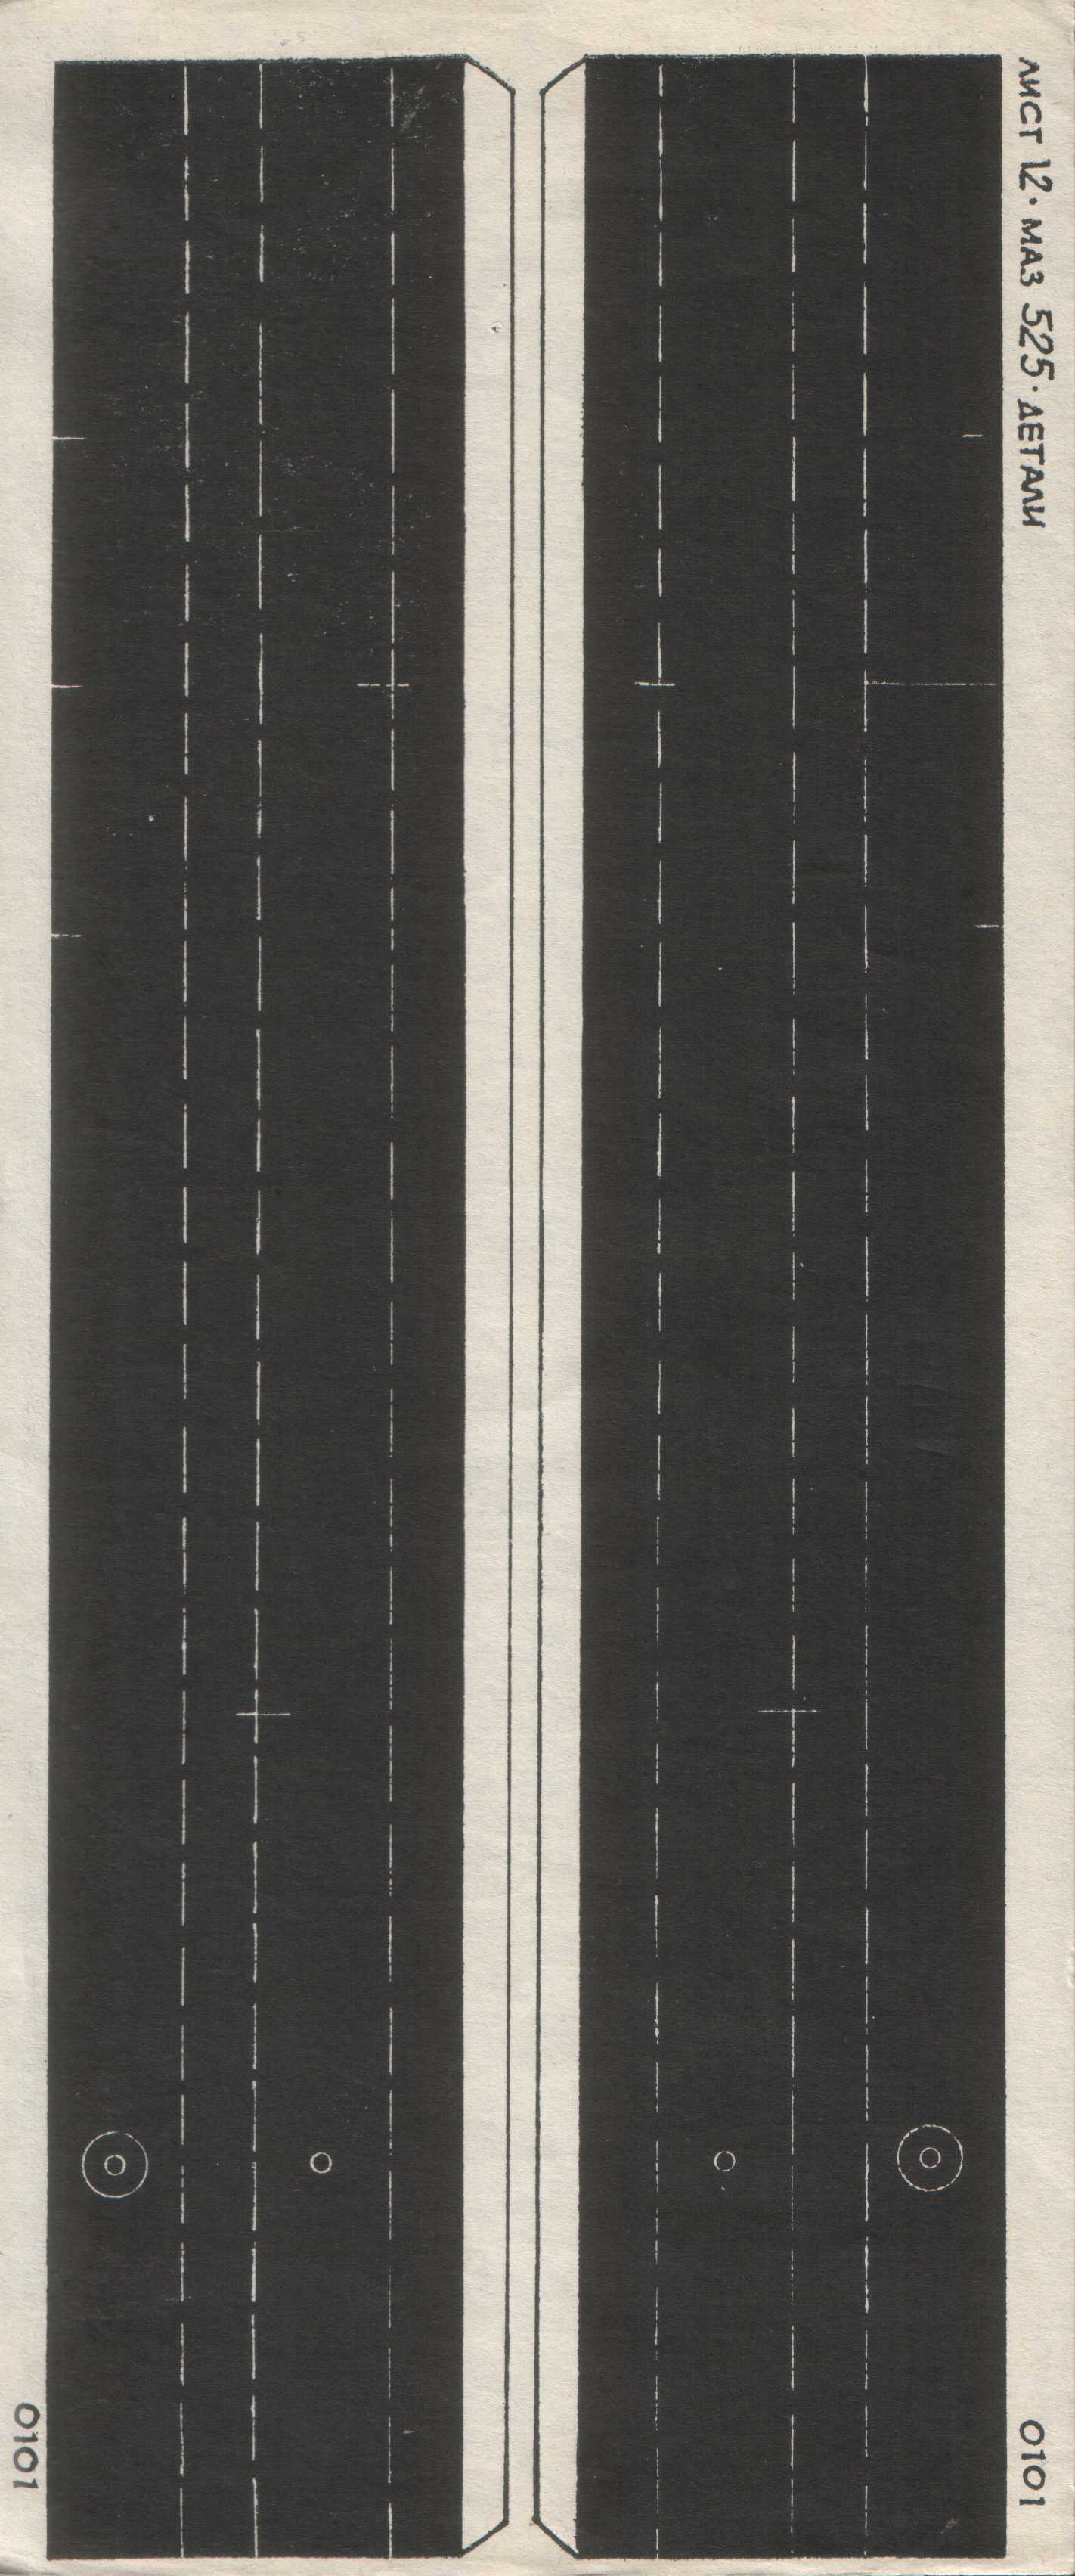  МАЗ-525. Лист 12